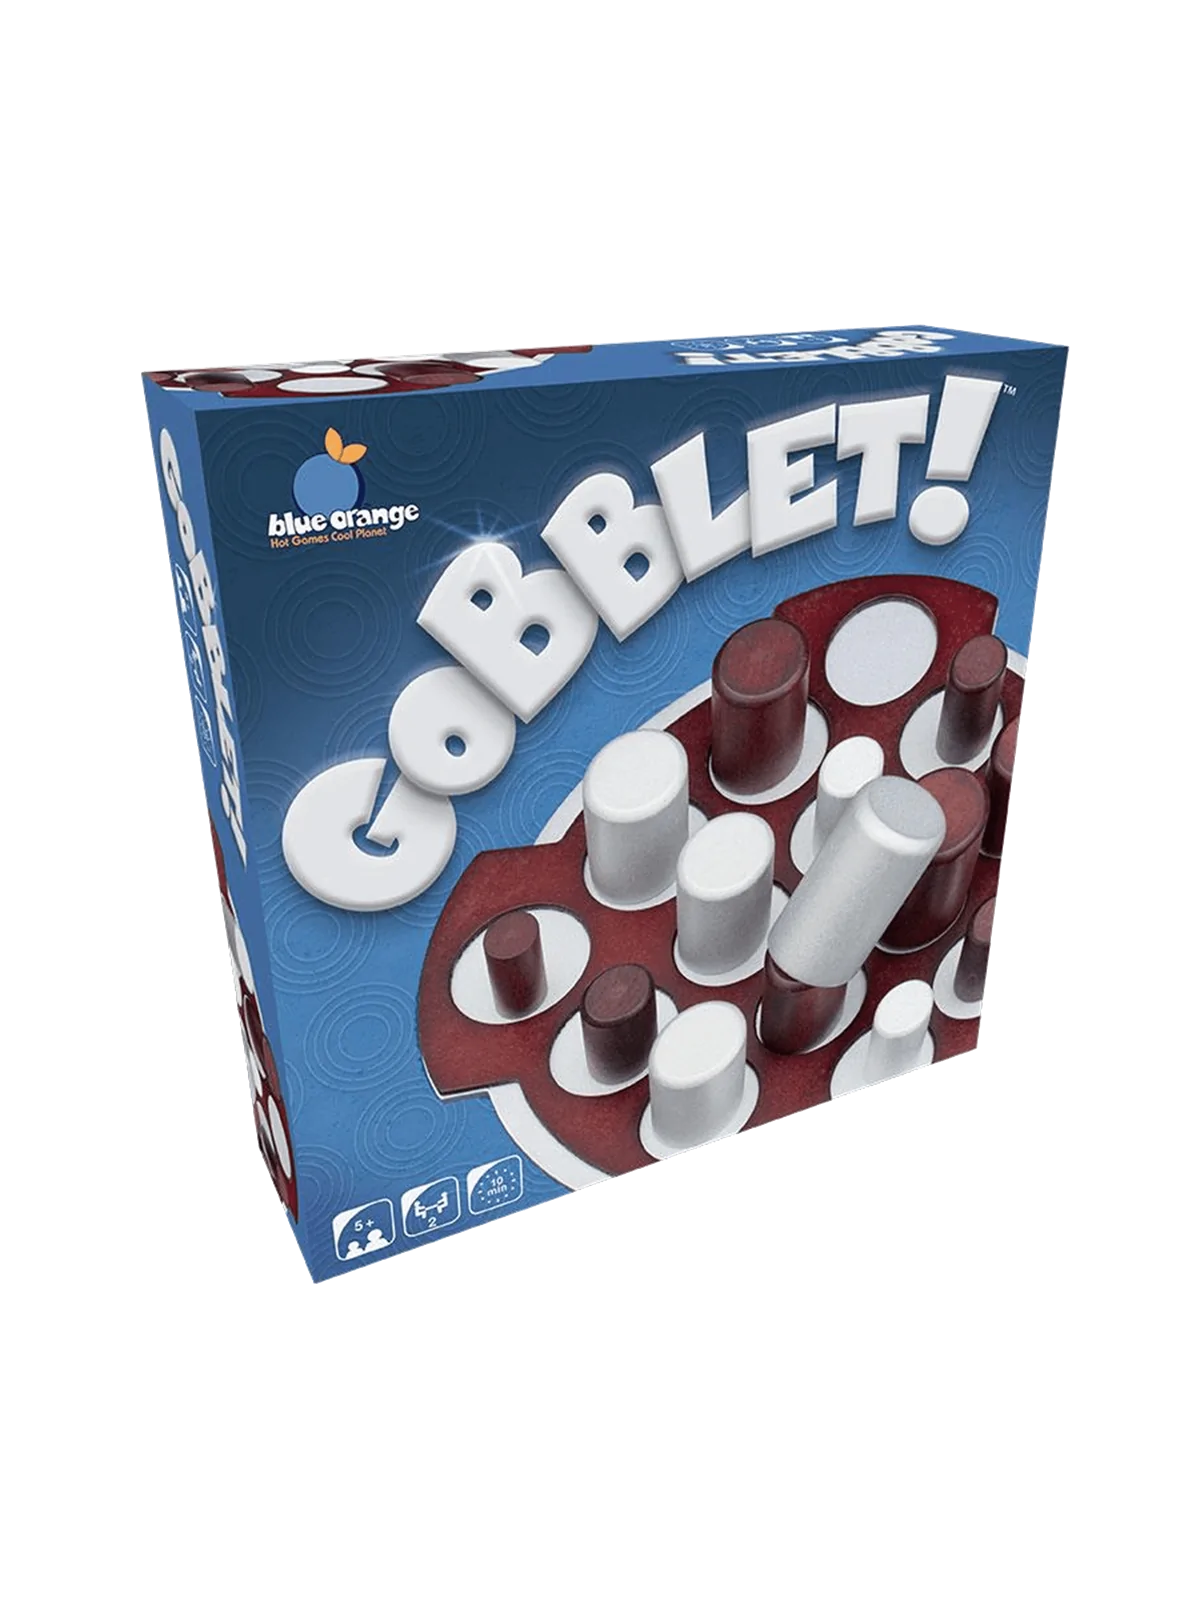 Comprar Gobblet! barato al mejor precio 31,49 € de Blue Orange Games